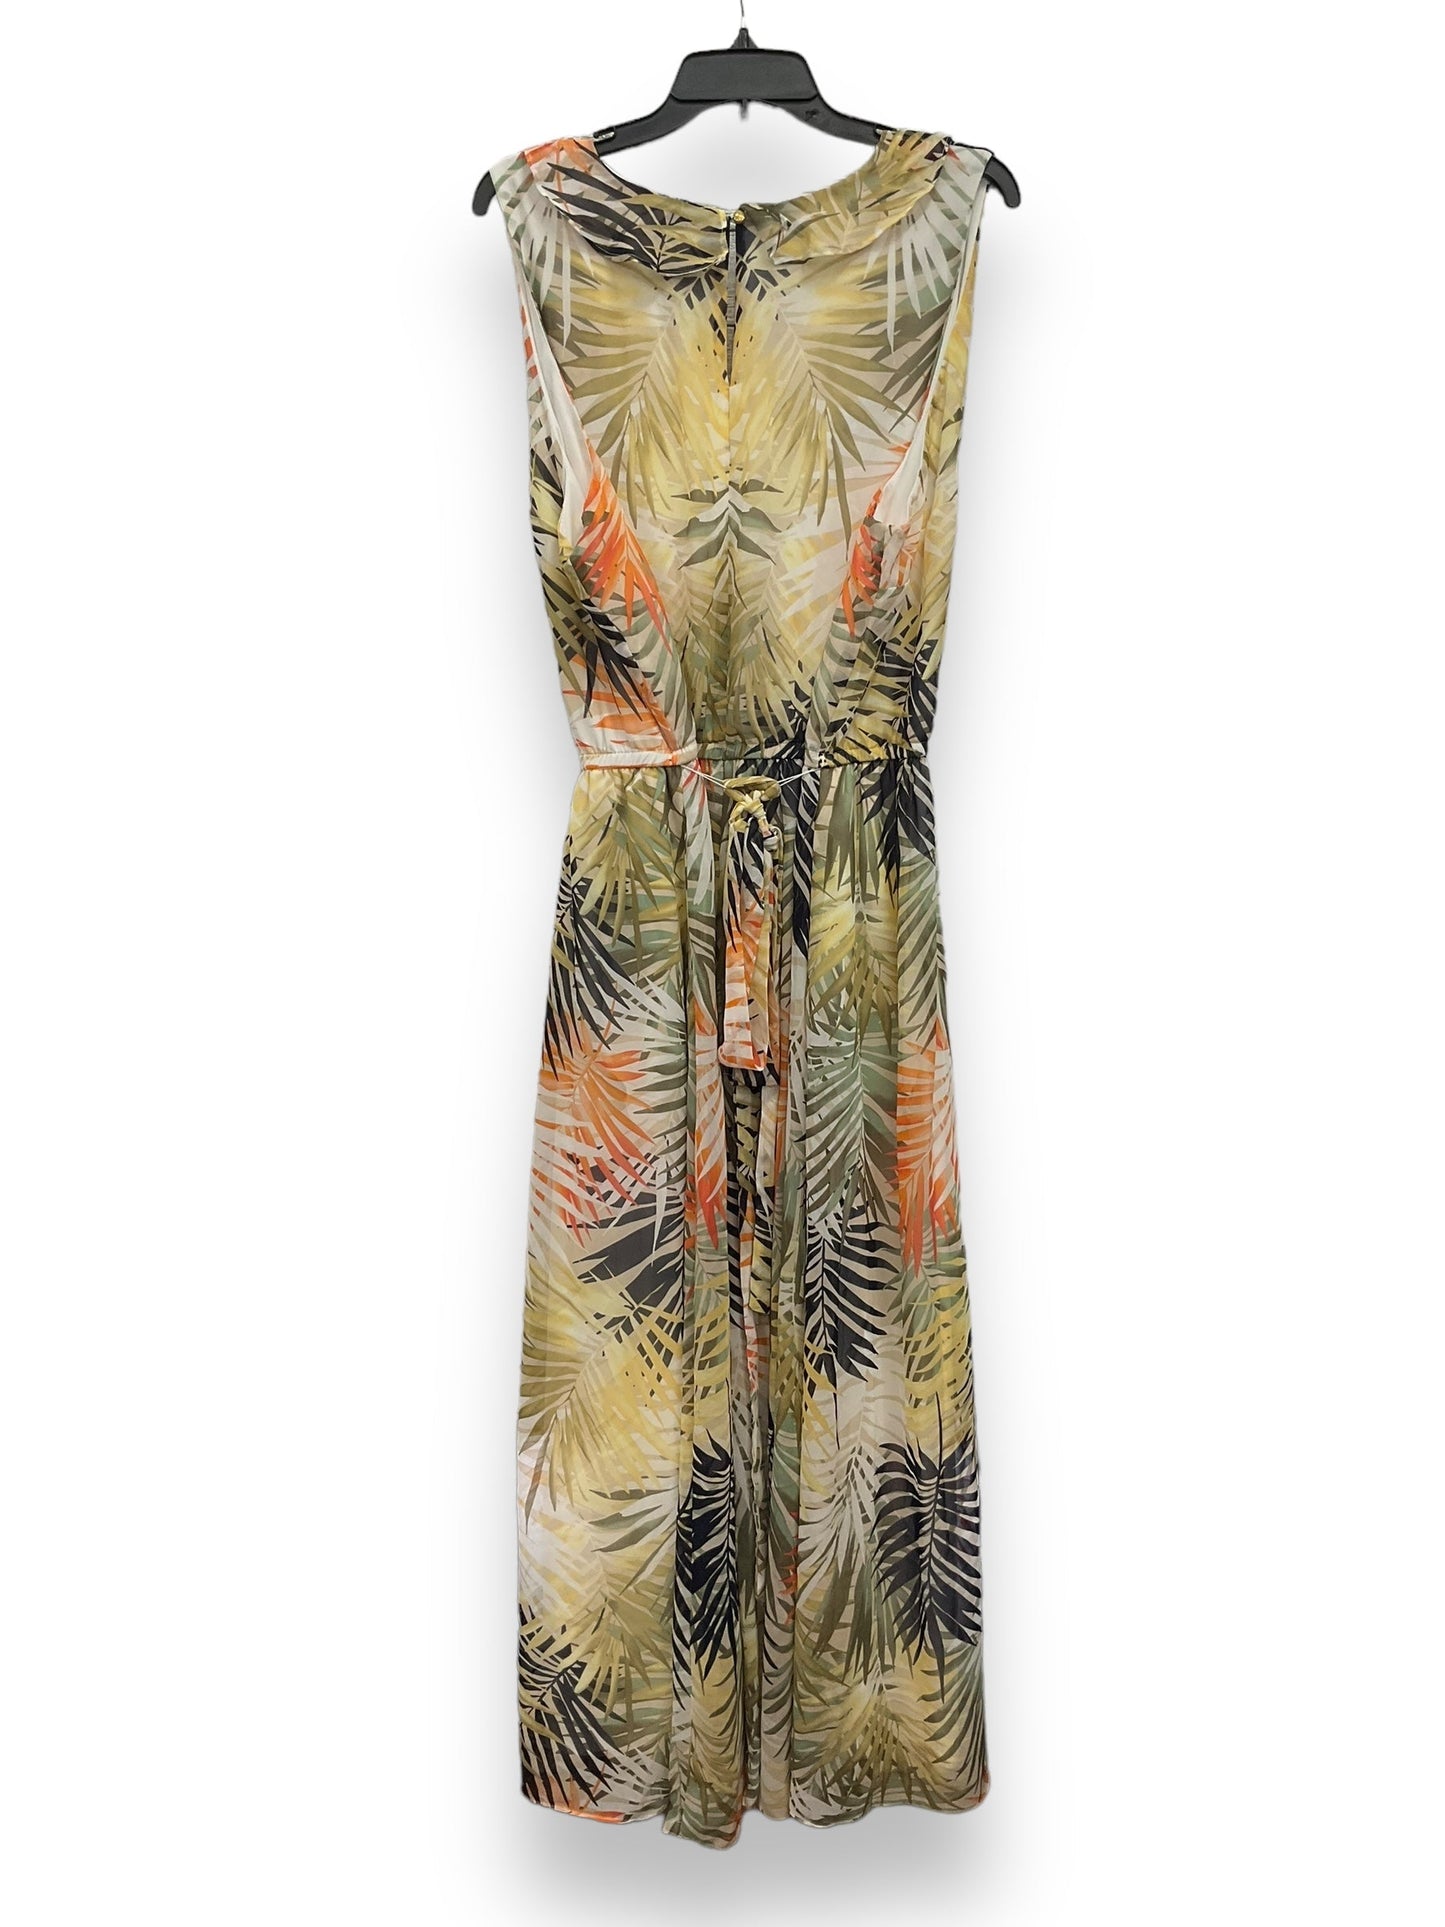 Tropical Print Dress Casual Maxi Lane Bryant, Size 2x